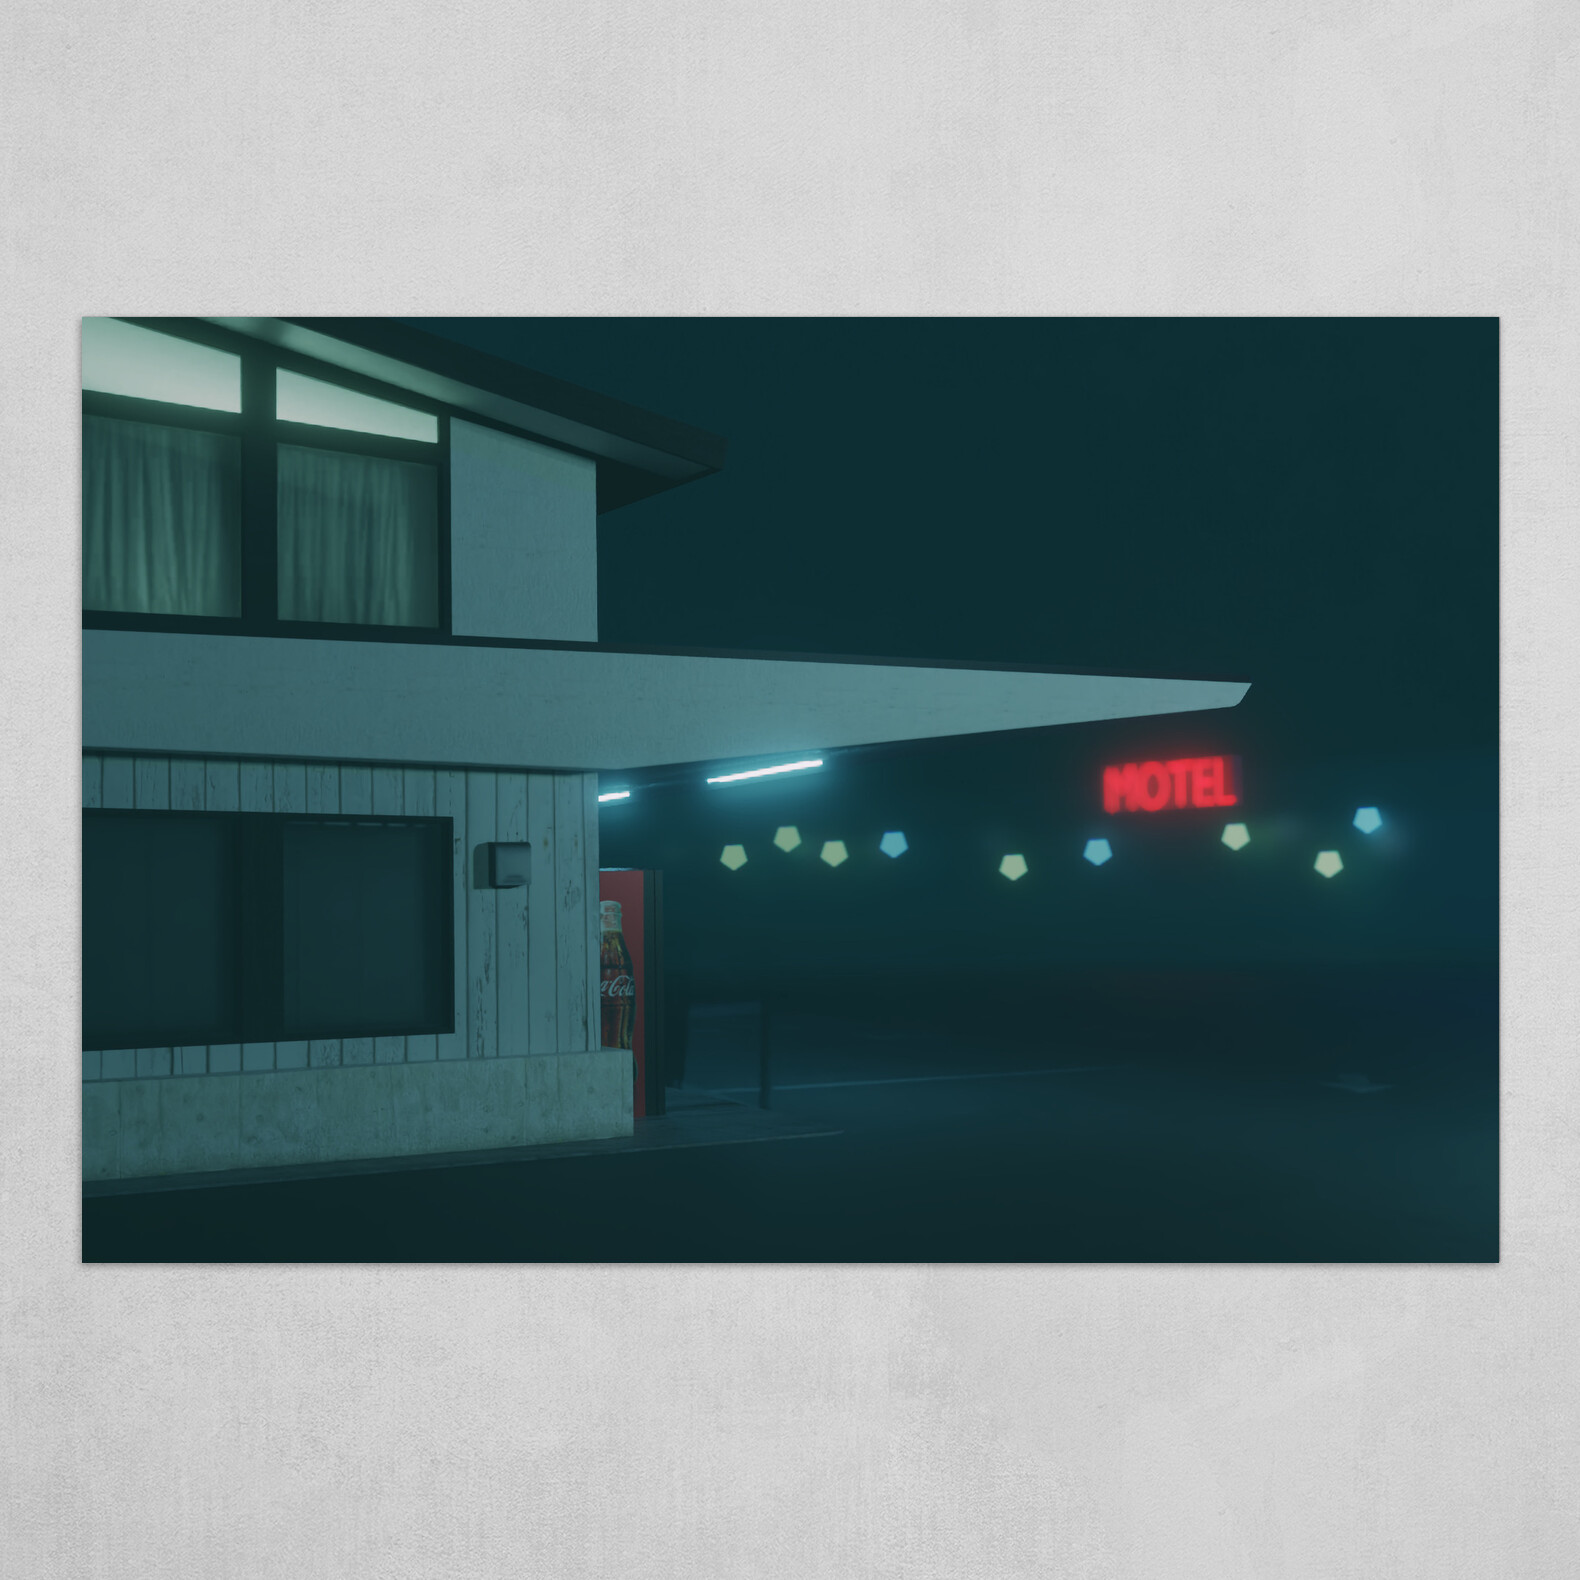 Roadside Motel